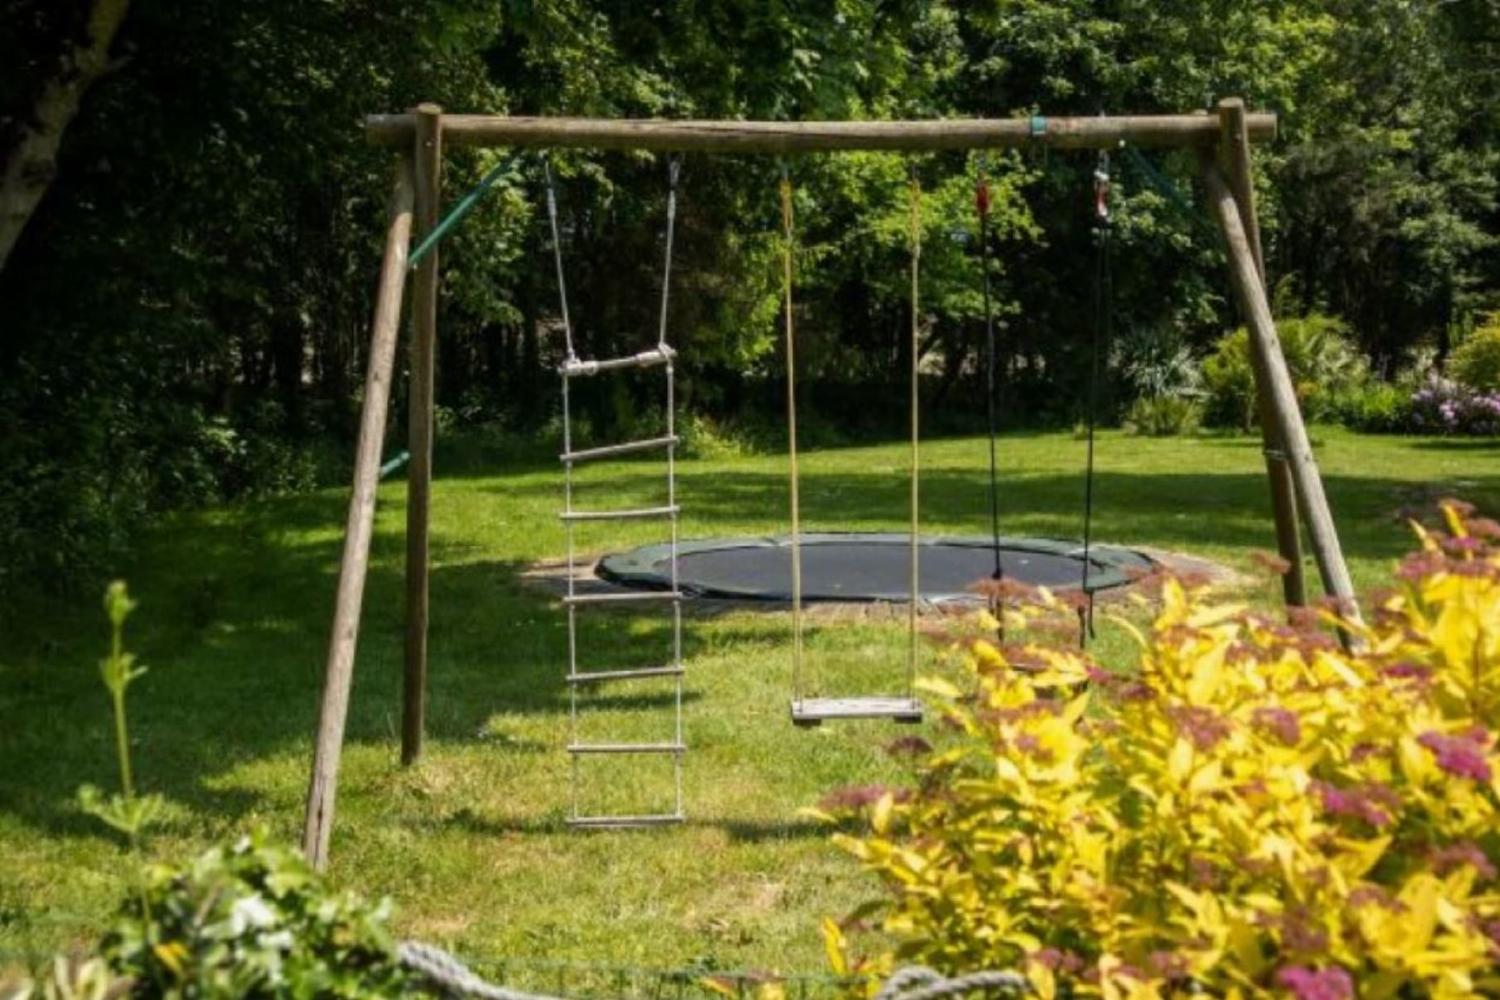 Swings and trampoline in garden